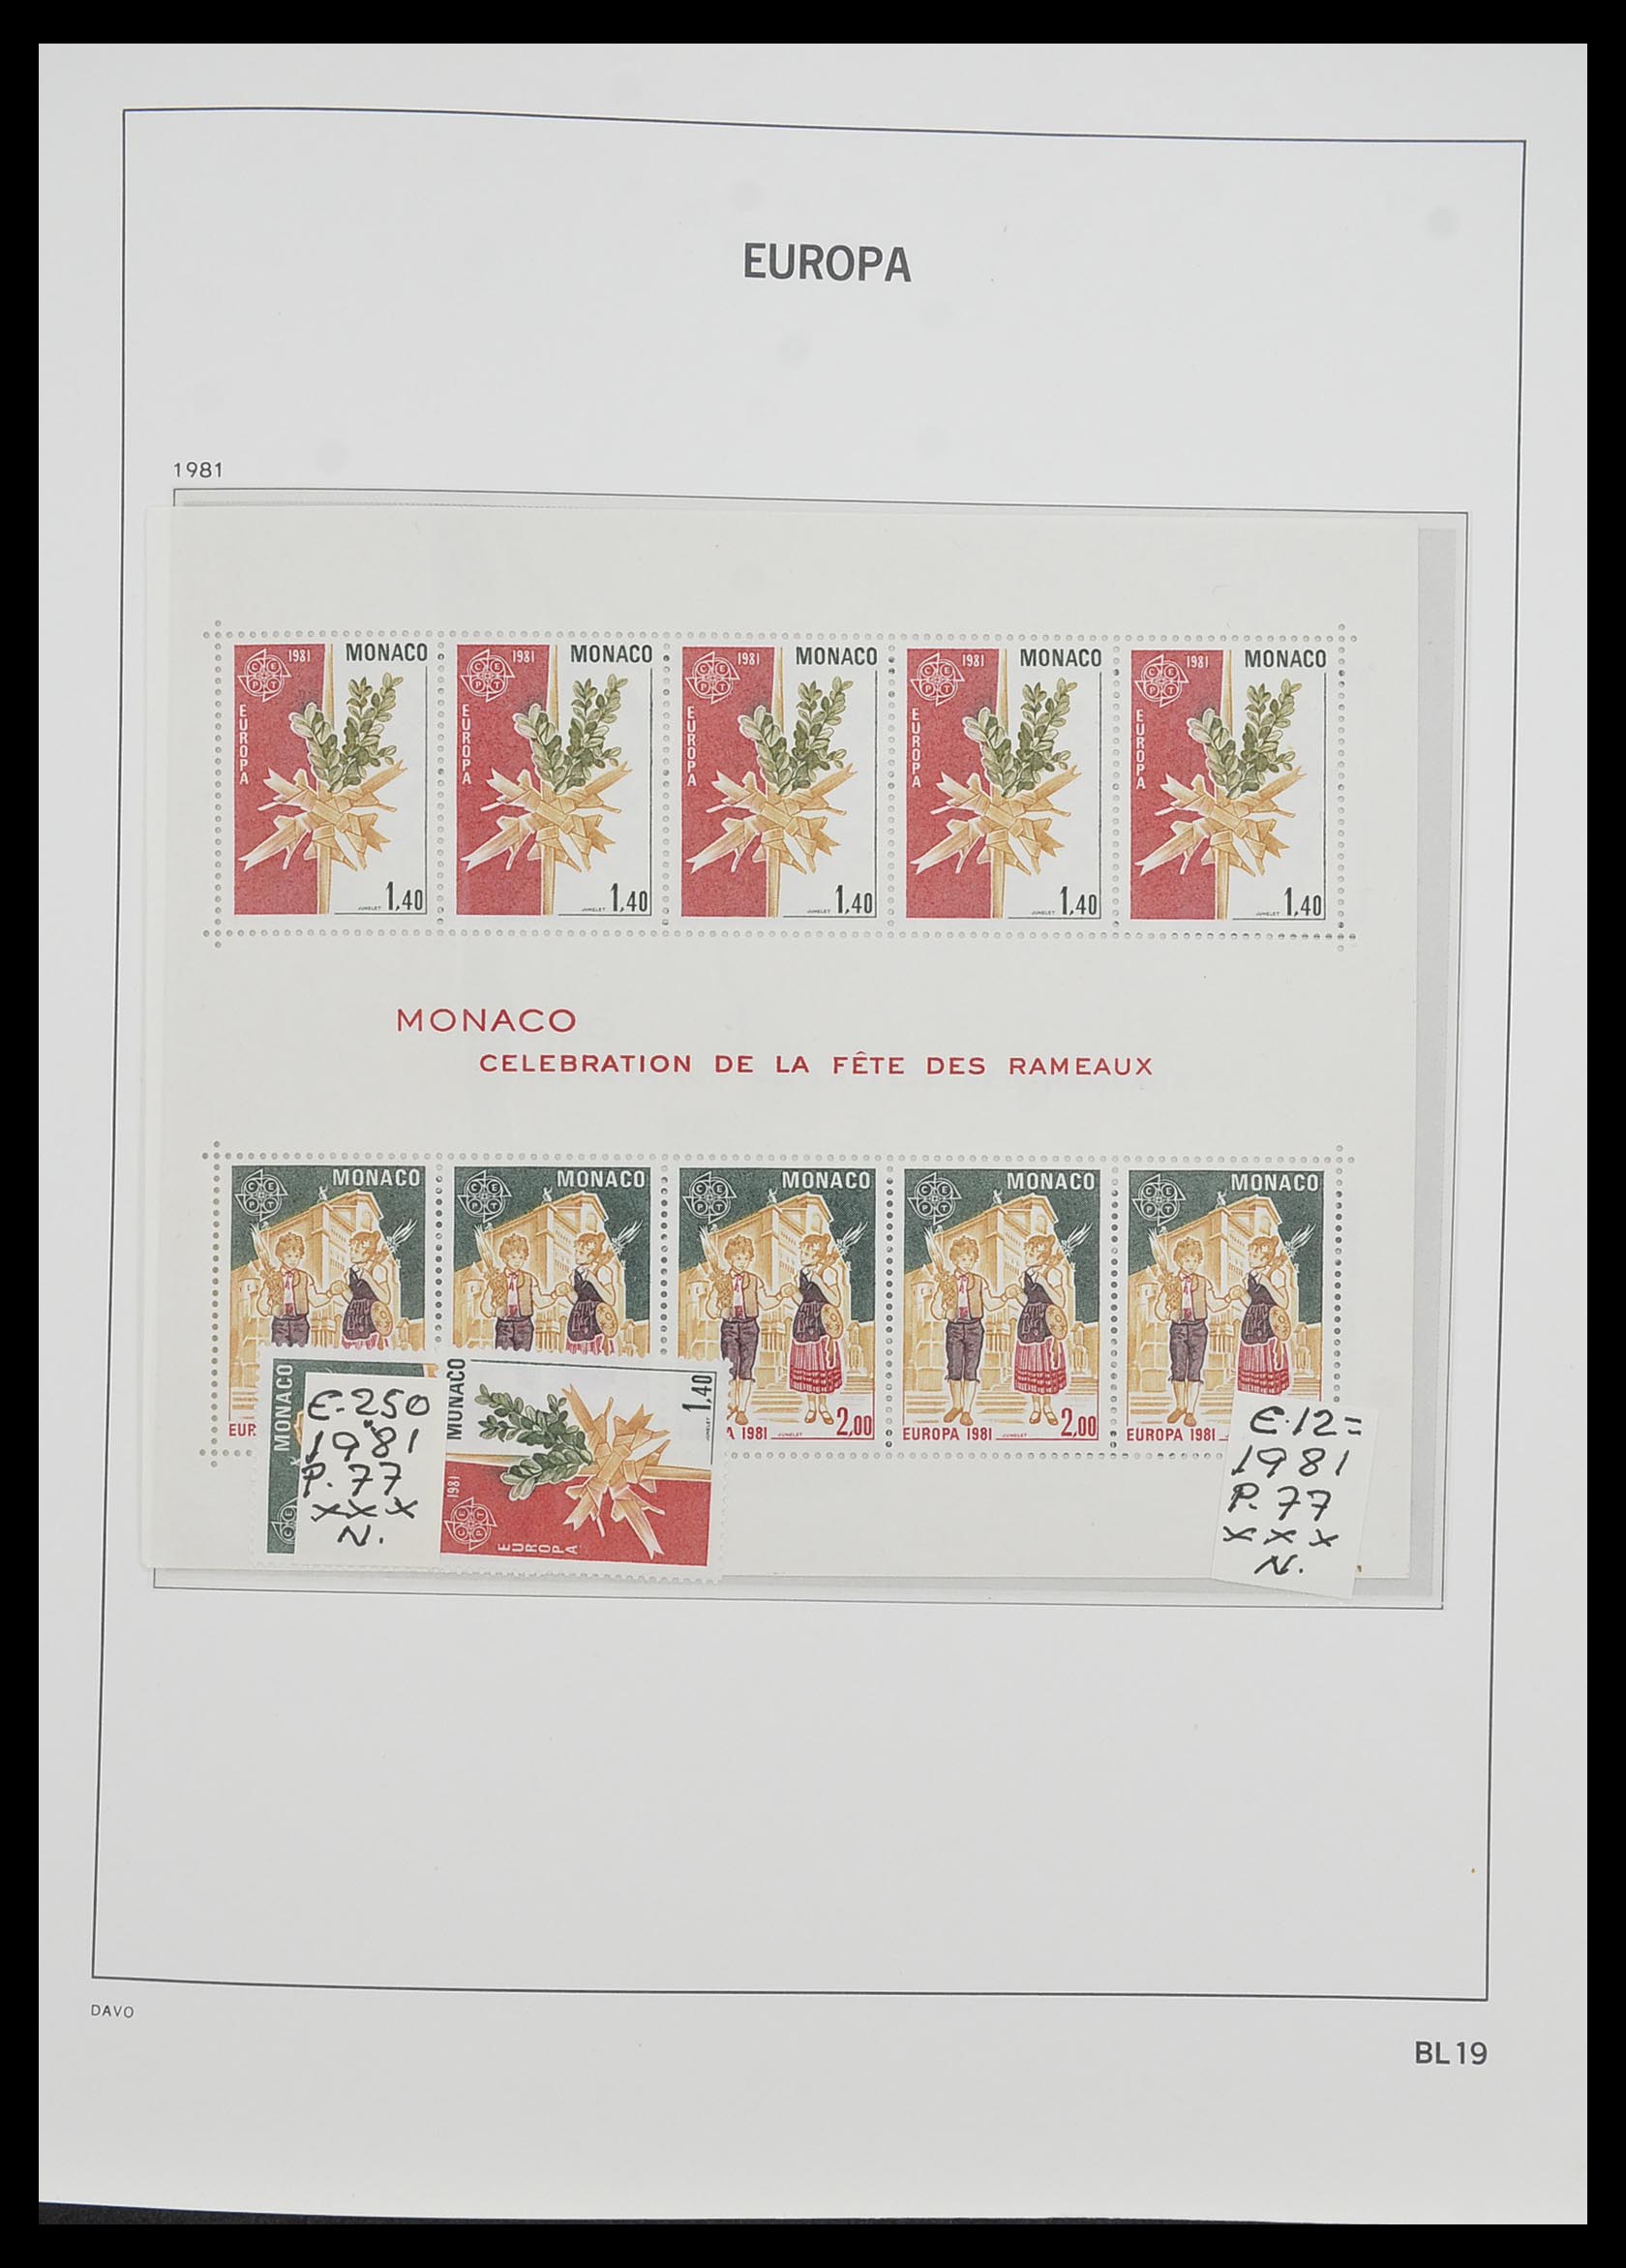 33985 020 - Stamp collection 33985 Europa CEPT souvenir sheets 1974-2014.